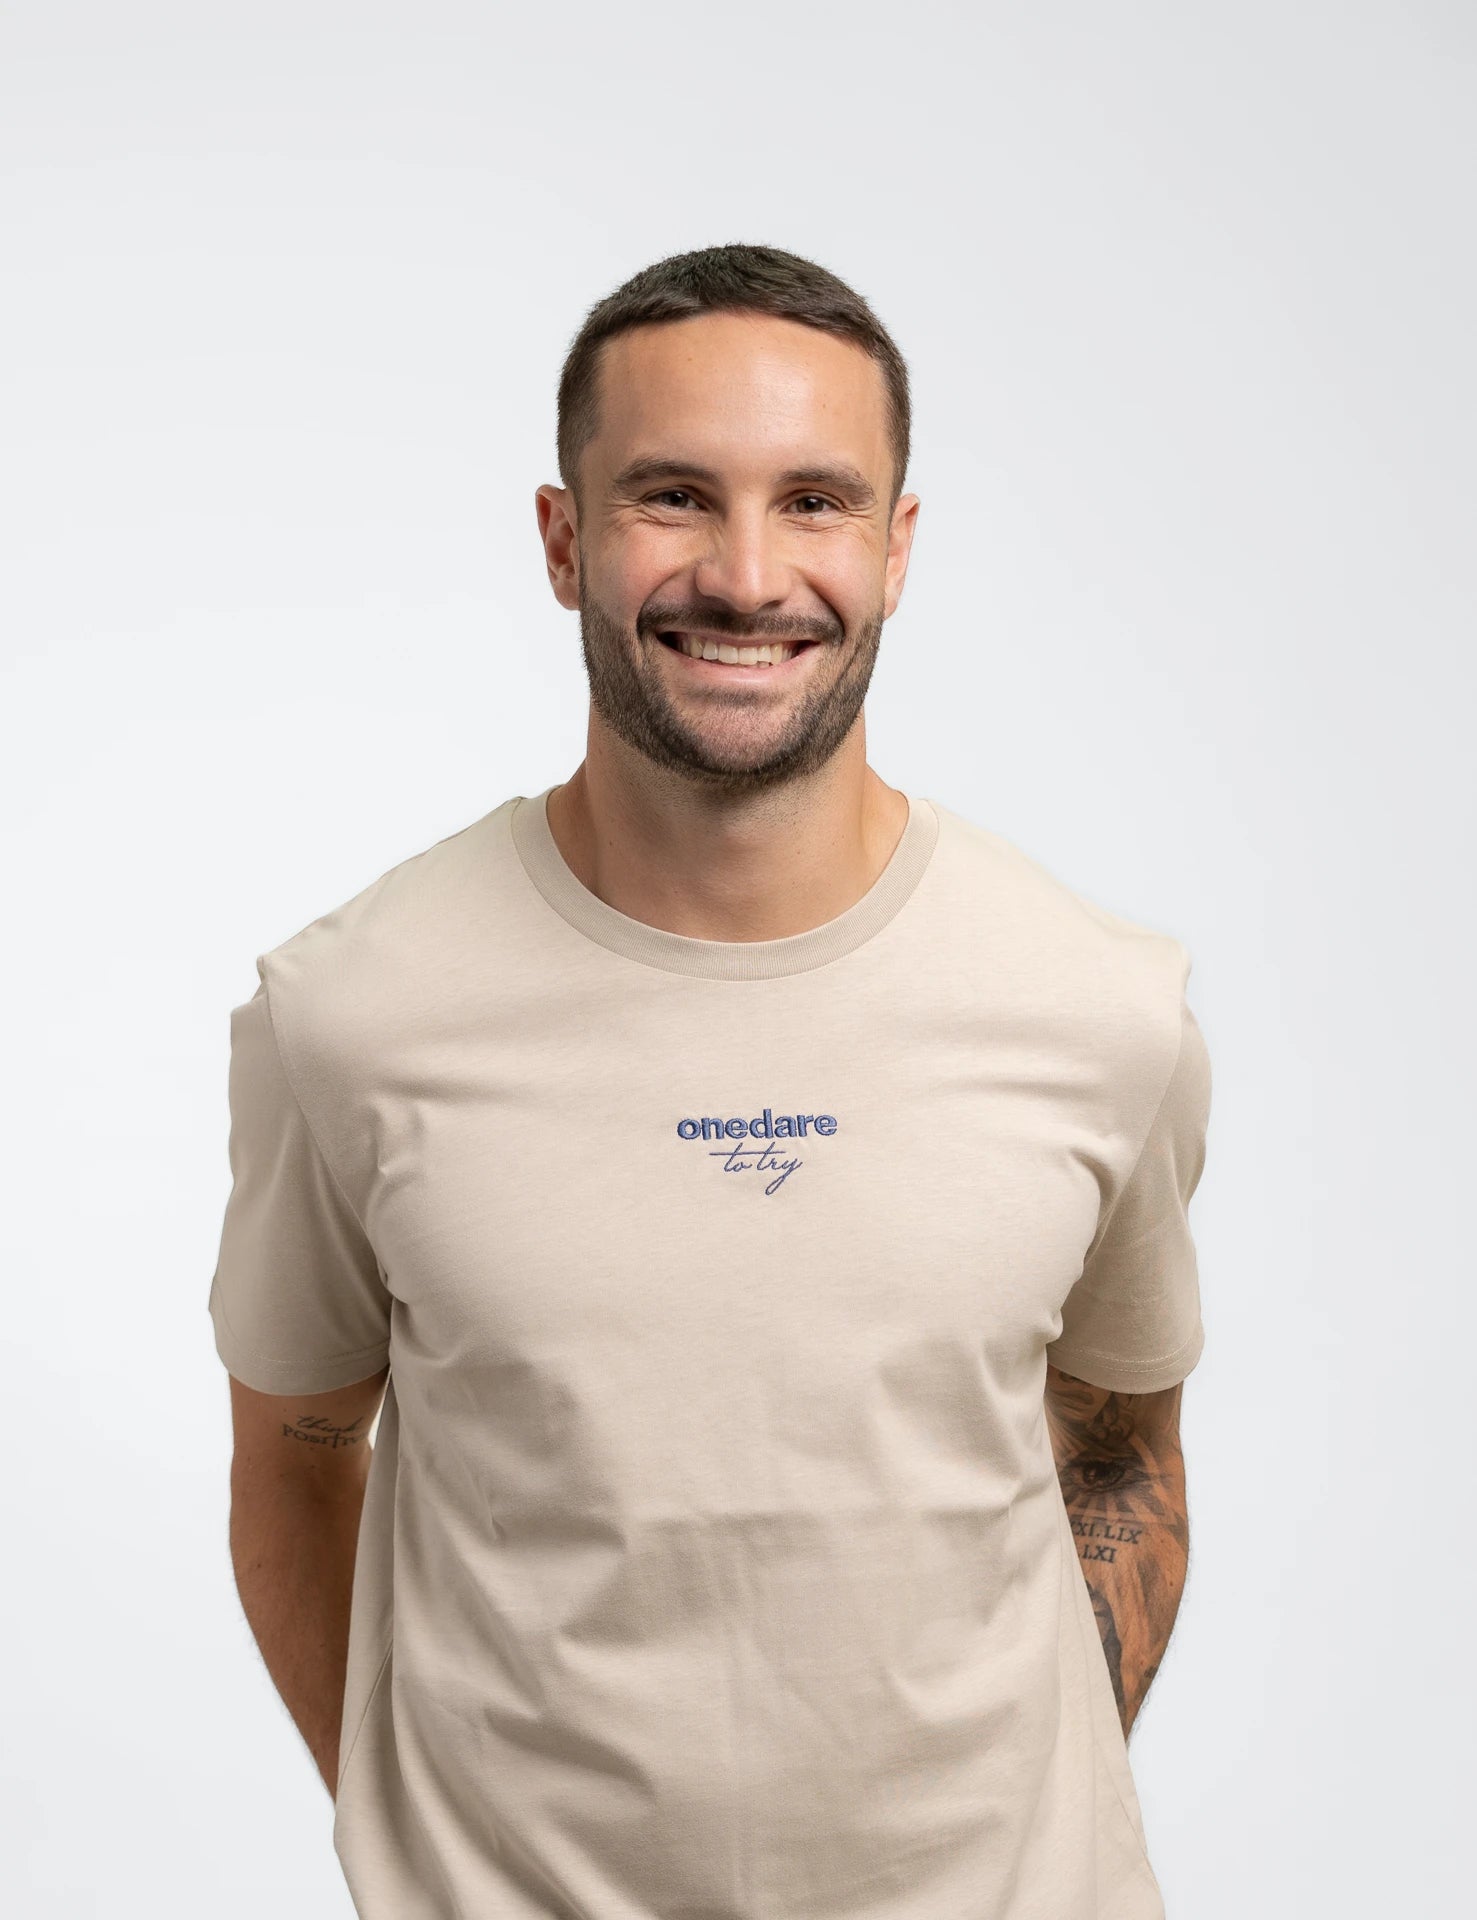 Sandfarbenes classic Bio-Baumwolle T-Shirt mit blauem, onedare totry Stick mittig auf der Brust.